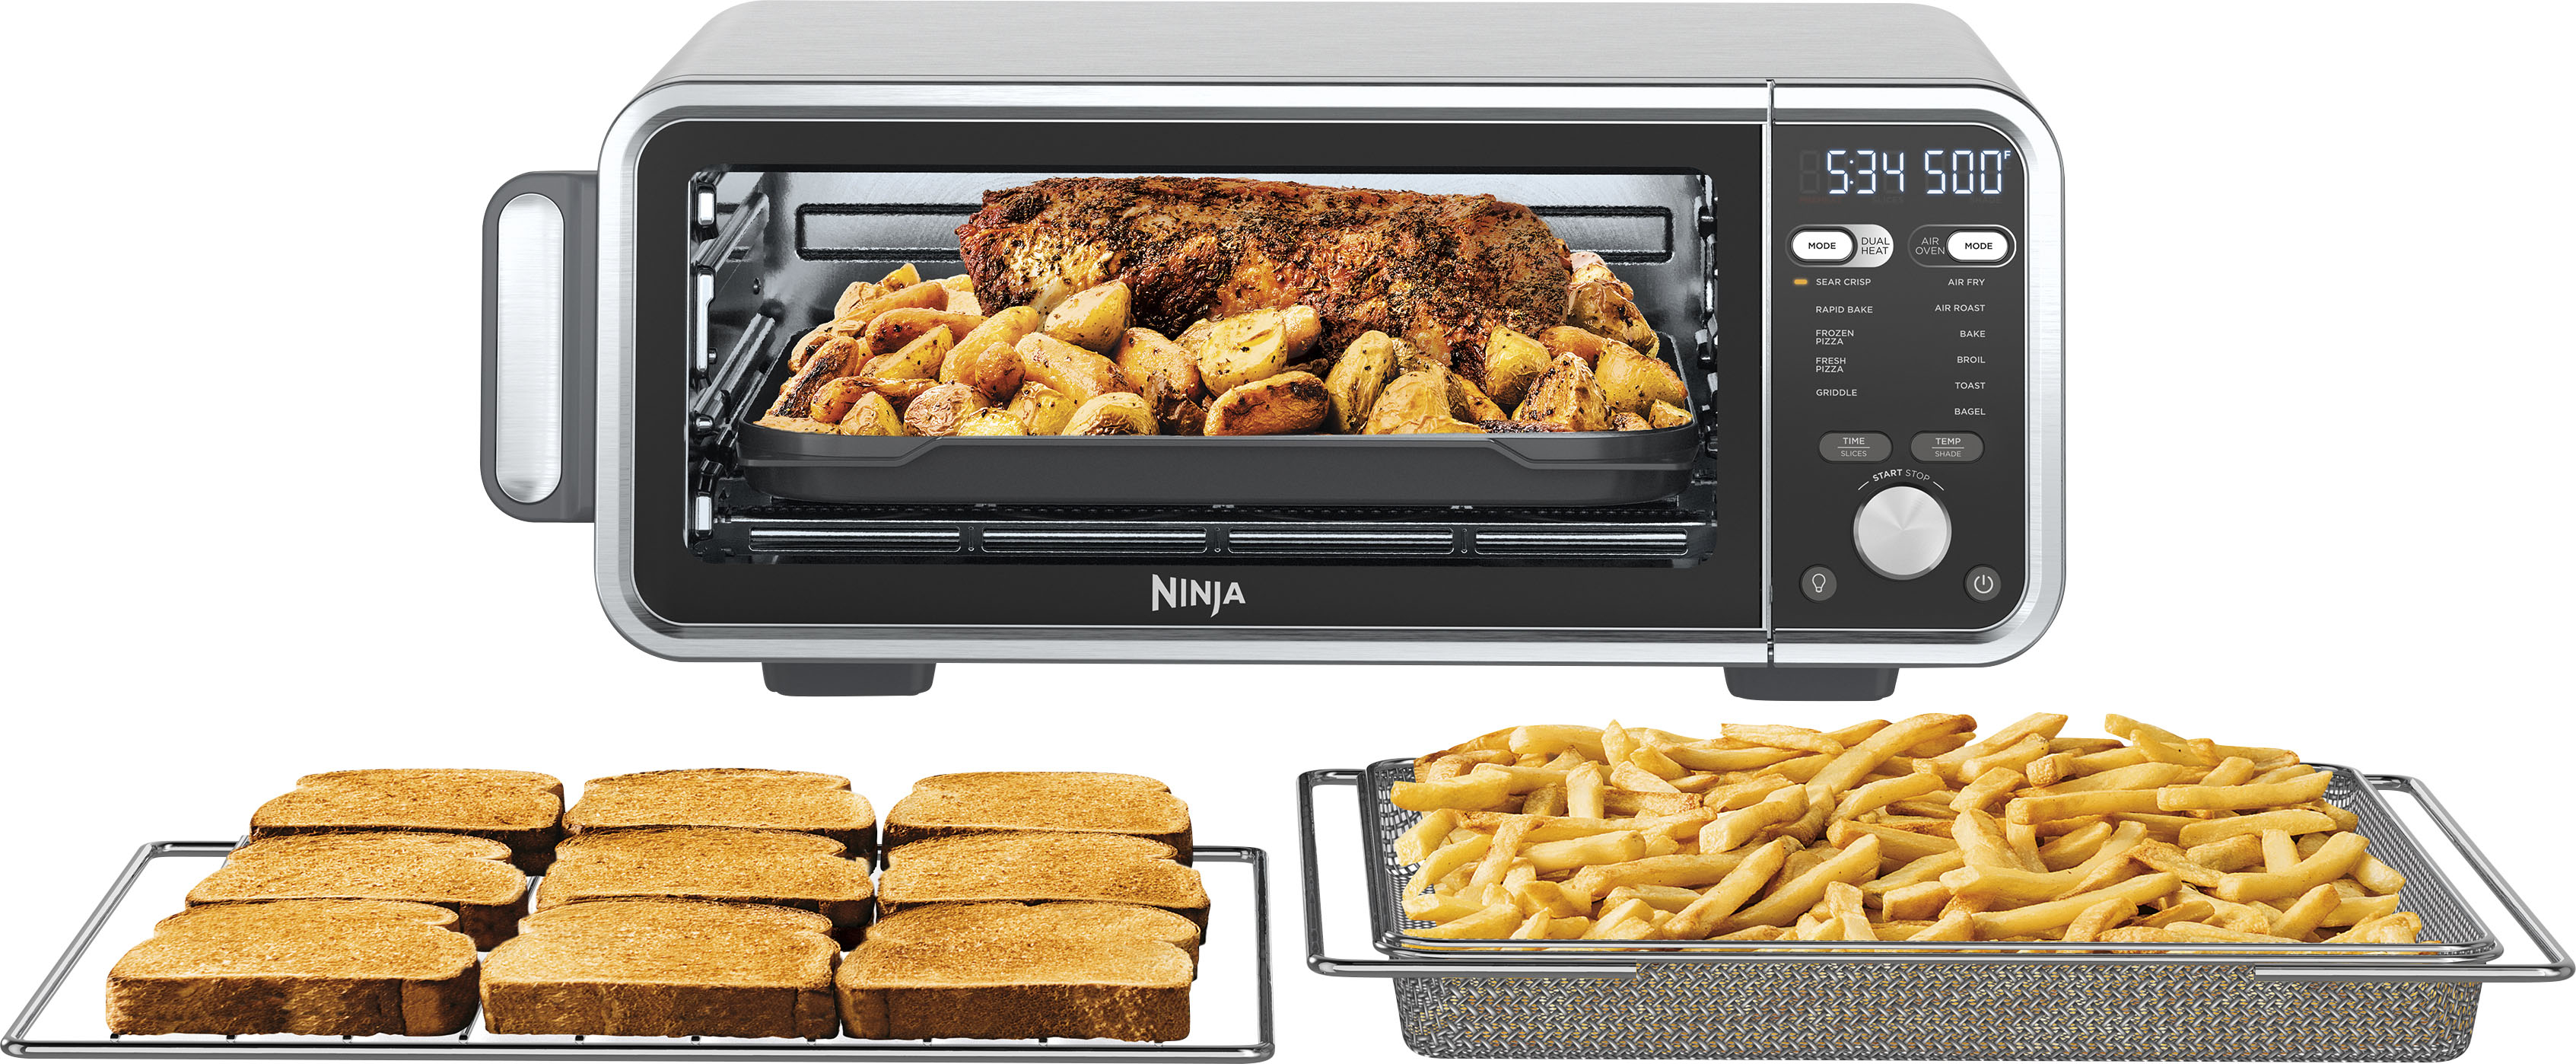 Ninja Foodi Digital Air Fryer Oven - Stainless Steel, 1 ct - Kroger